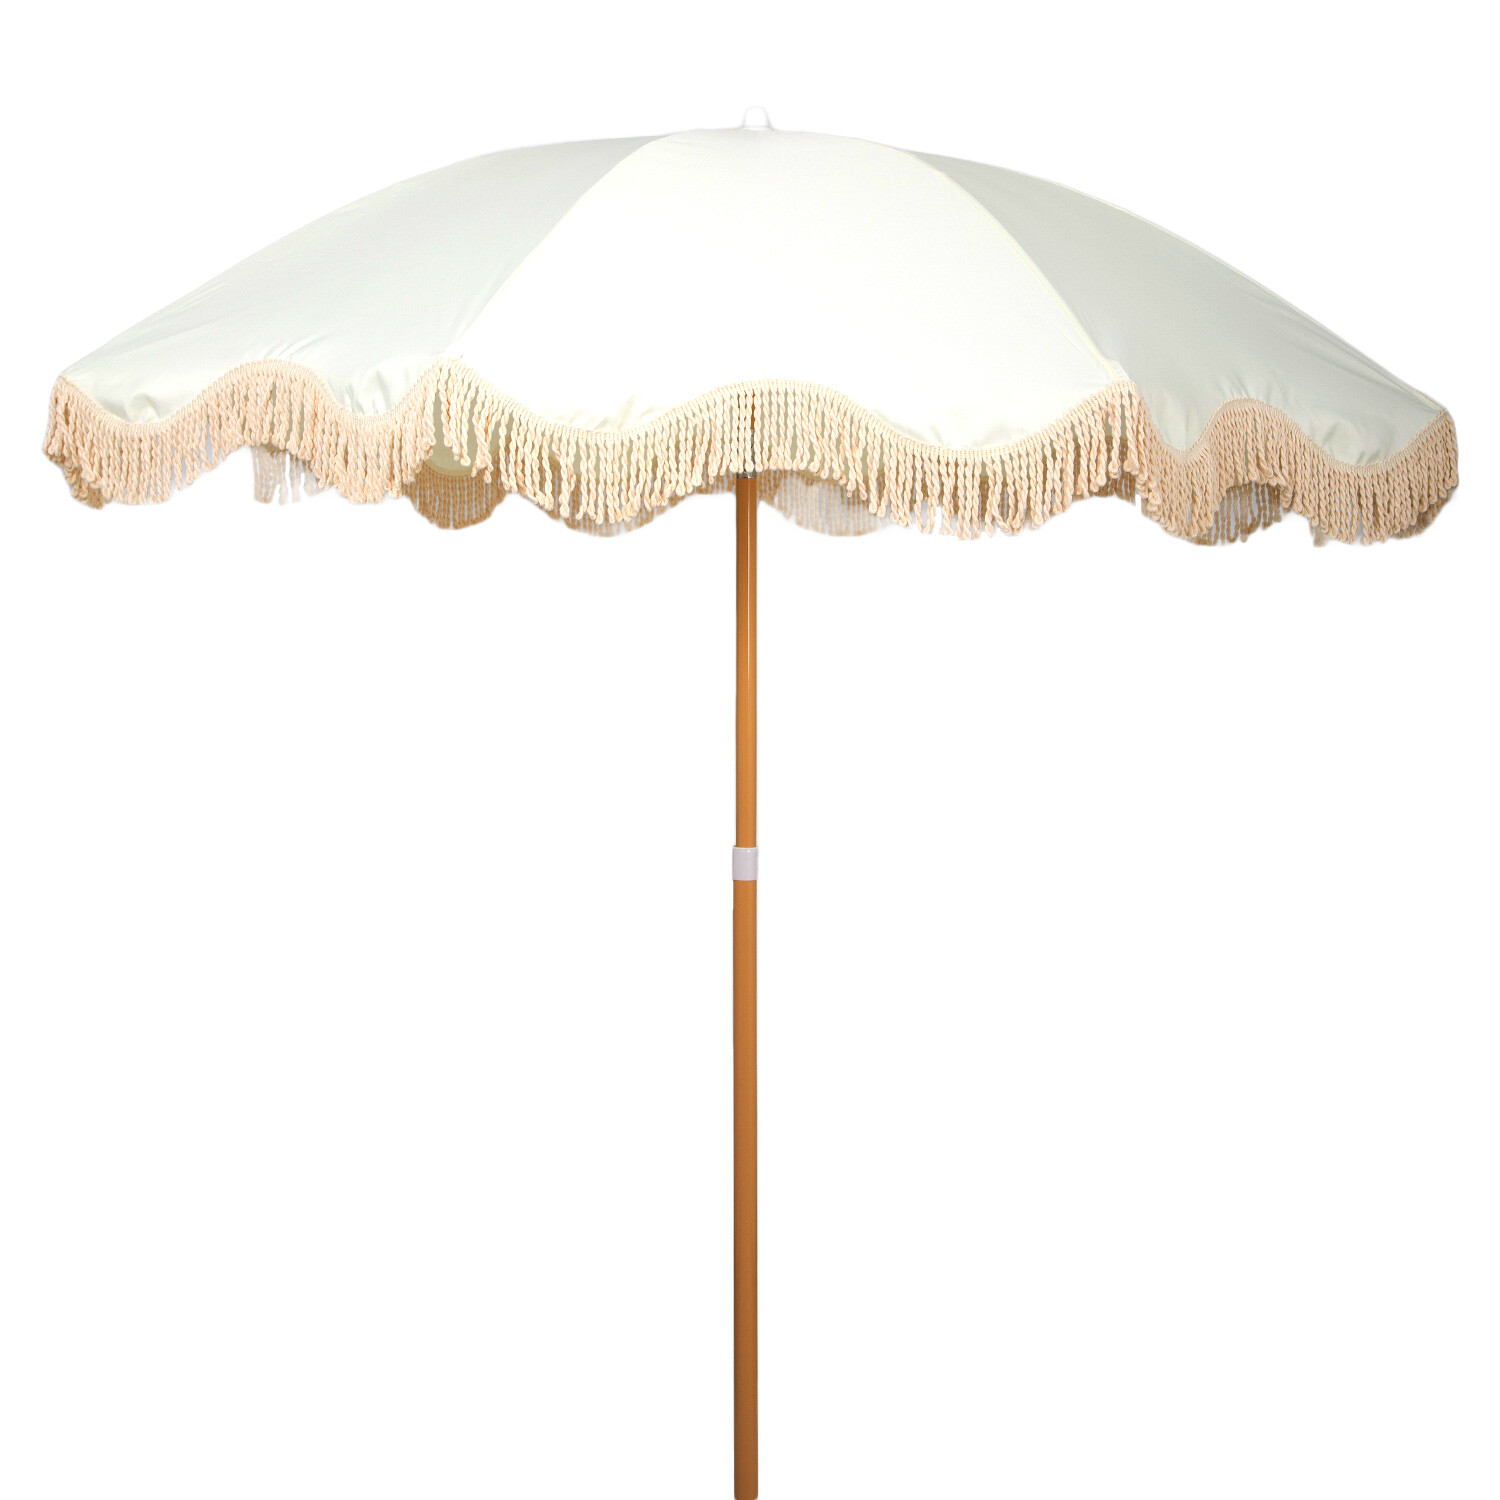 Cream Beach Umbrella with Tassels 1.7m Image 1